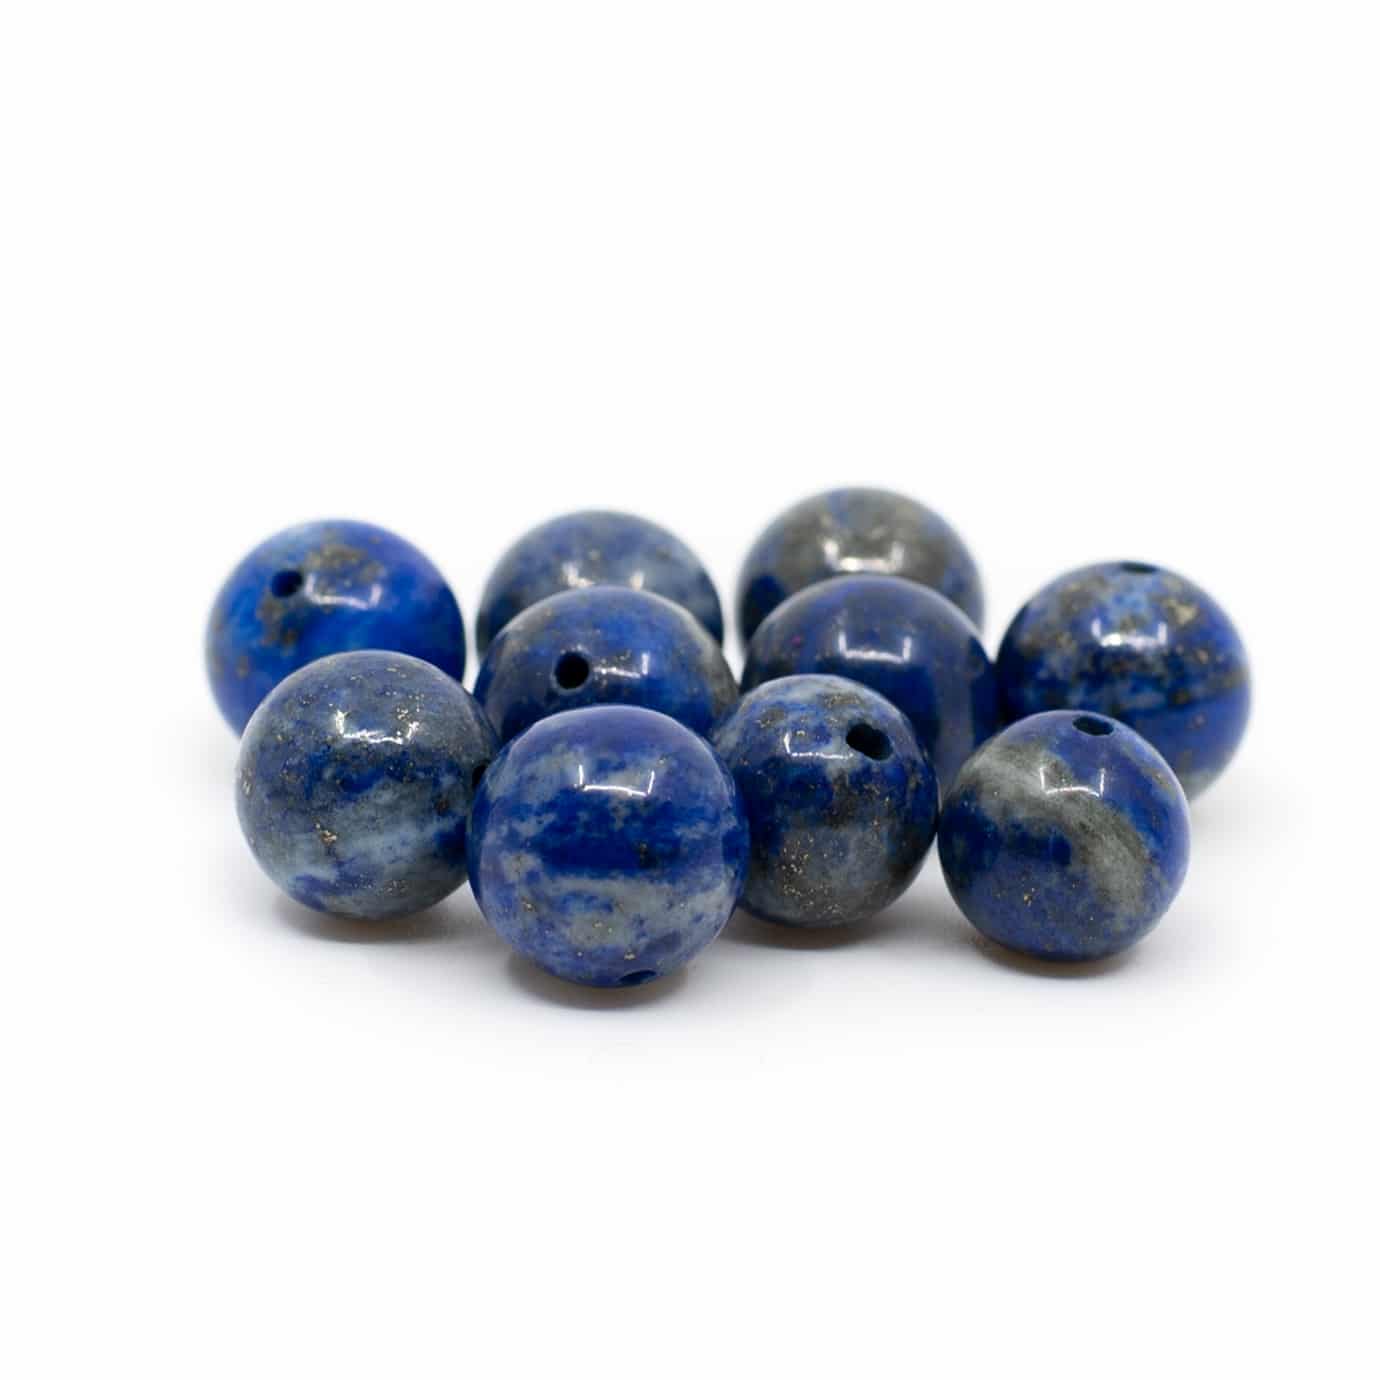 Edelsteen Losse Kralen Lapis Lazuli - 10 stuks (10 mm)